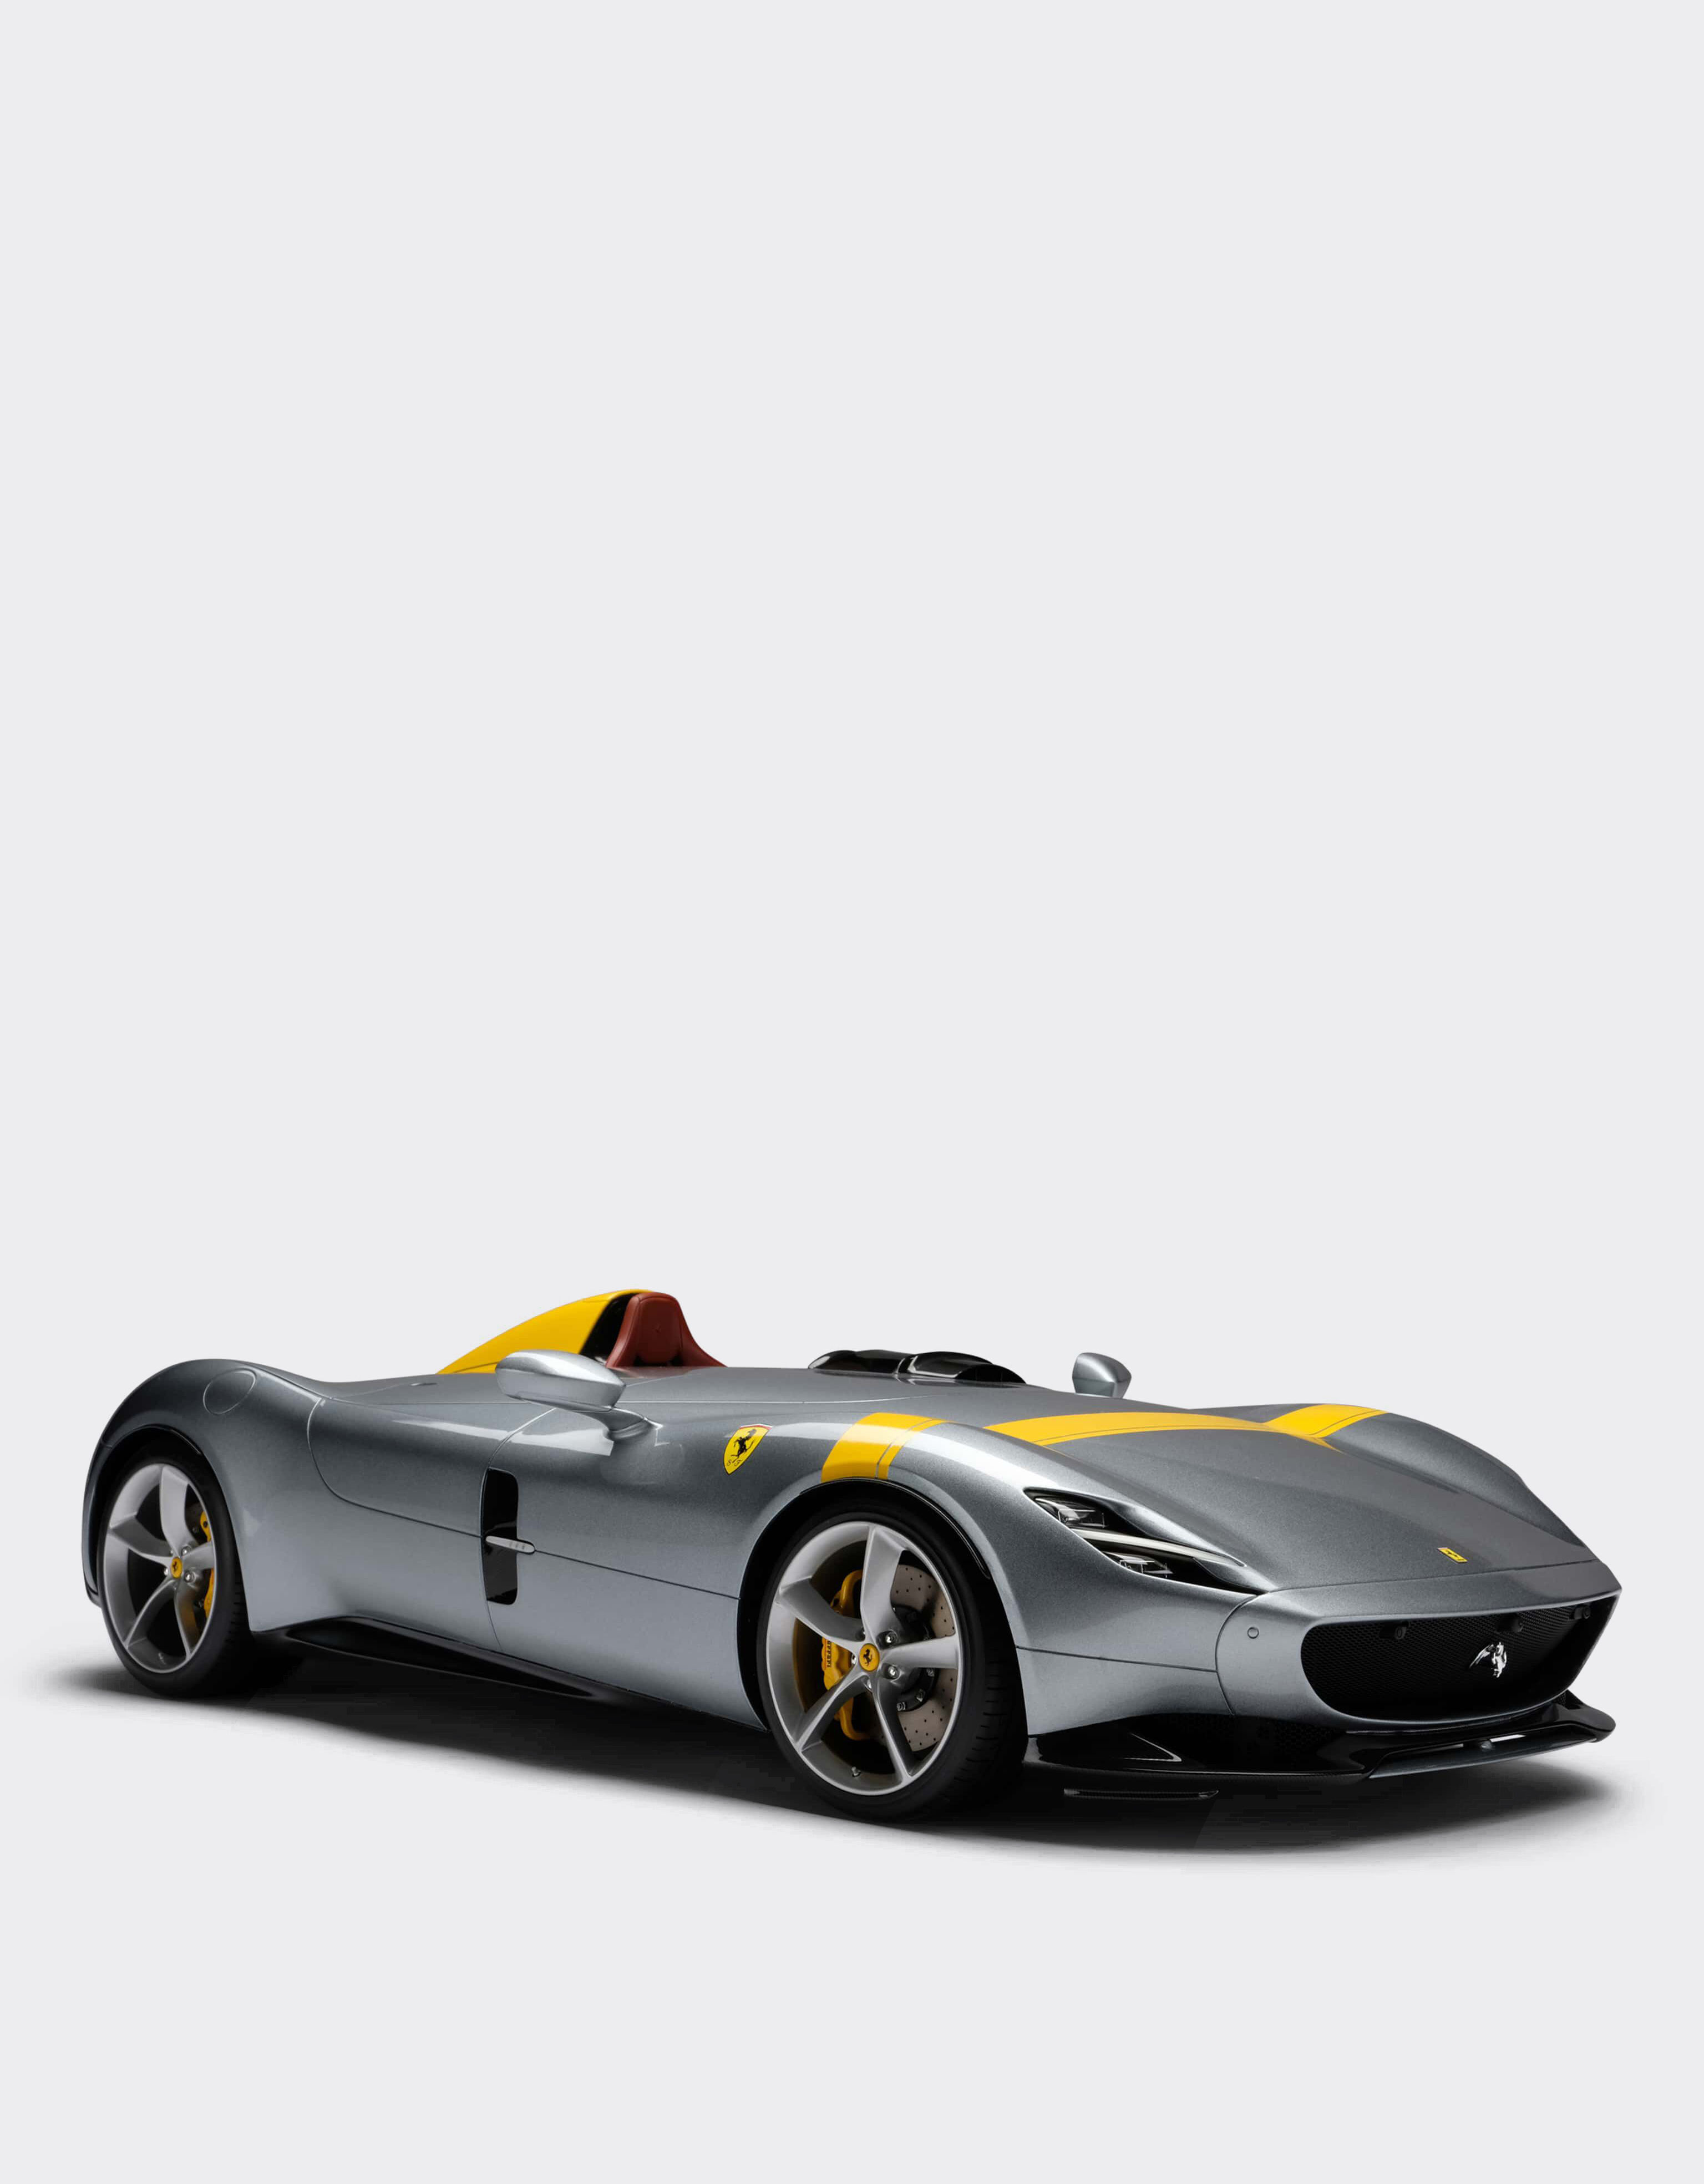 ${brand} Ferrari Monza SP1 モデルカー 1:8スケール ${colorDescription} ${masterID}